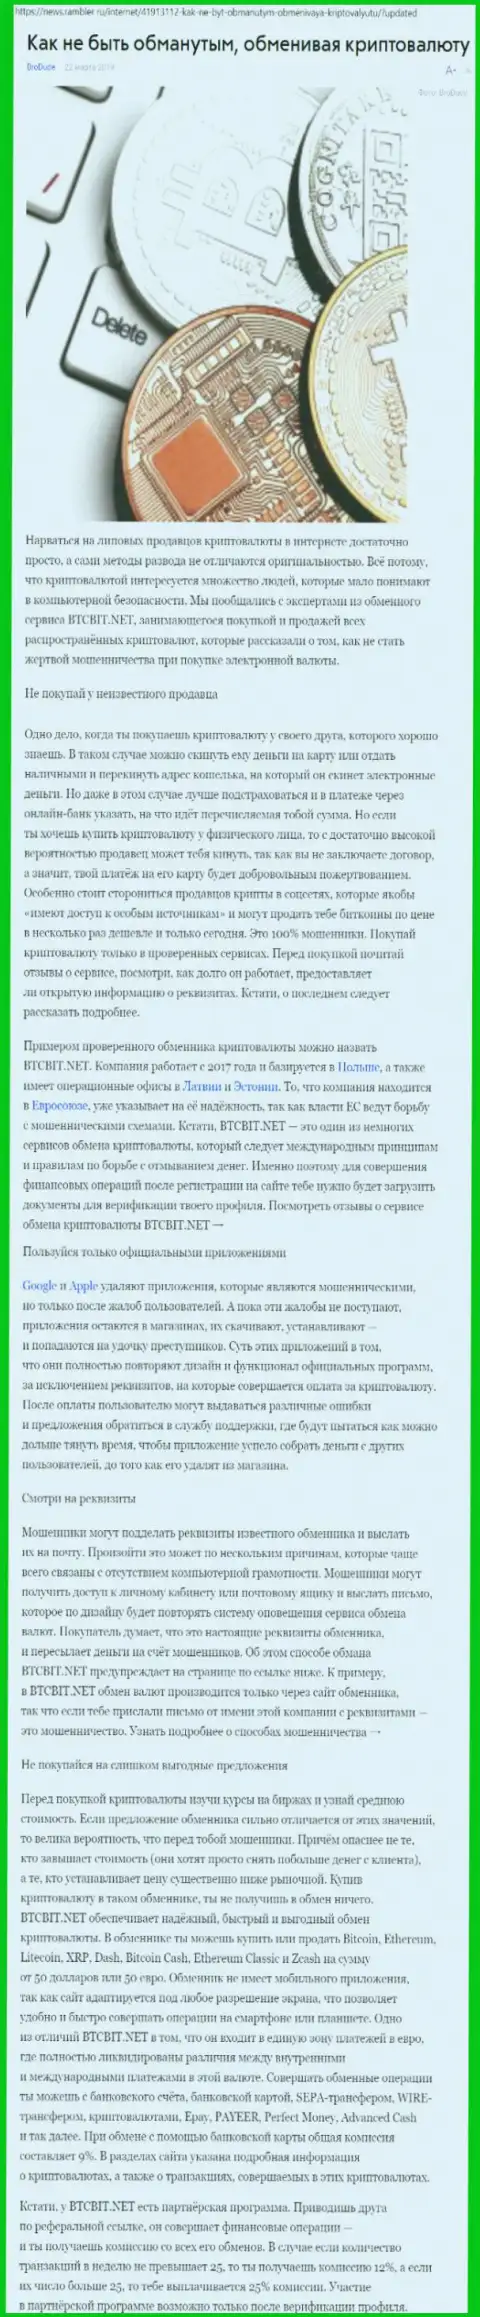 Статья об online-обменнике BTCBit на News Rambler Ru